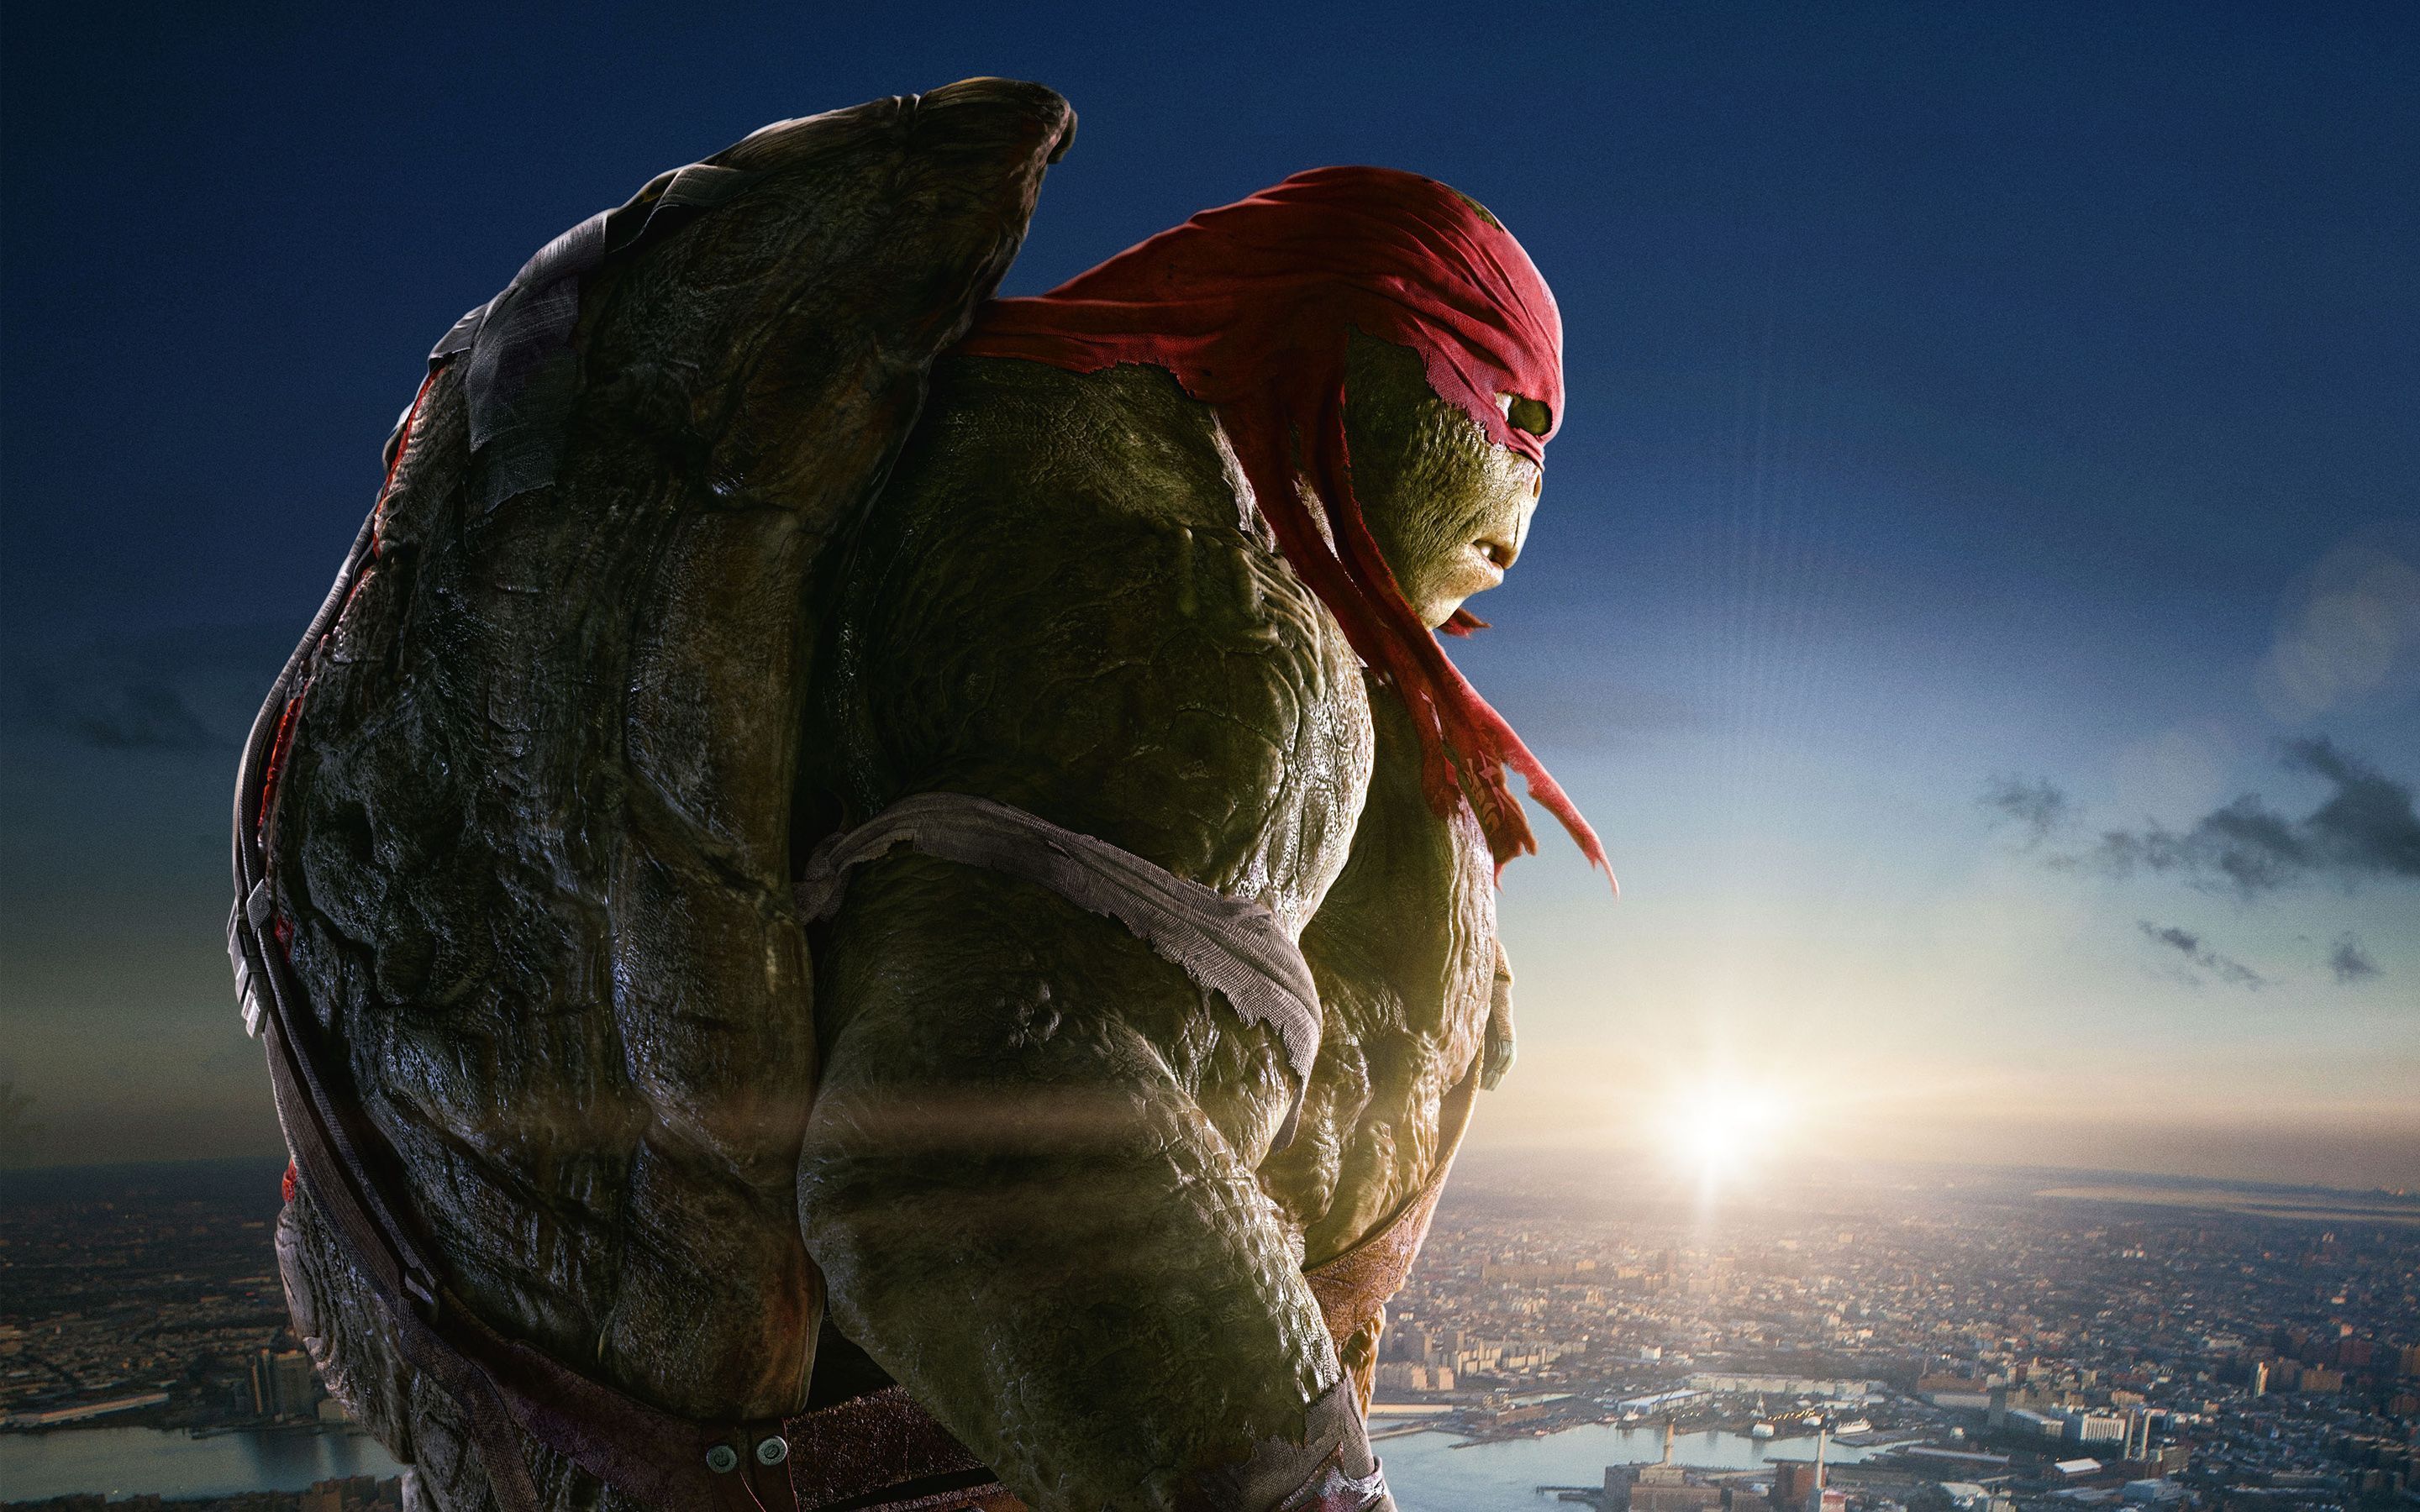 Raphael in Teenage Mutant Ninja Turtles Wallpapers | HD Wallpapers